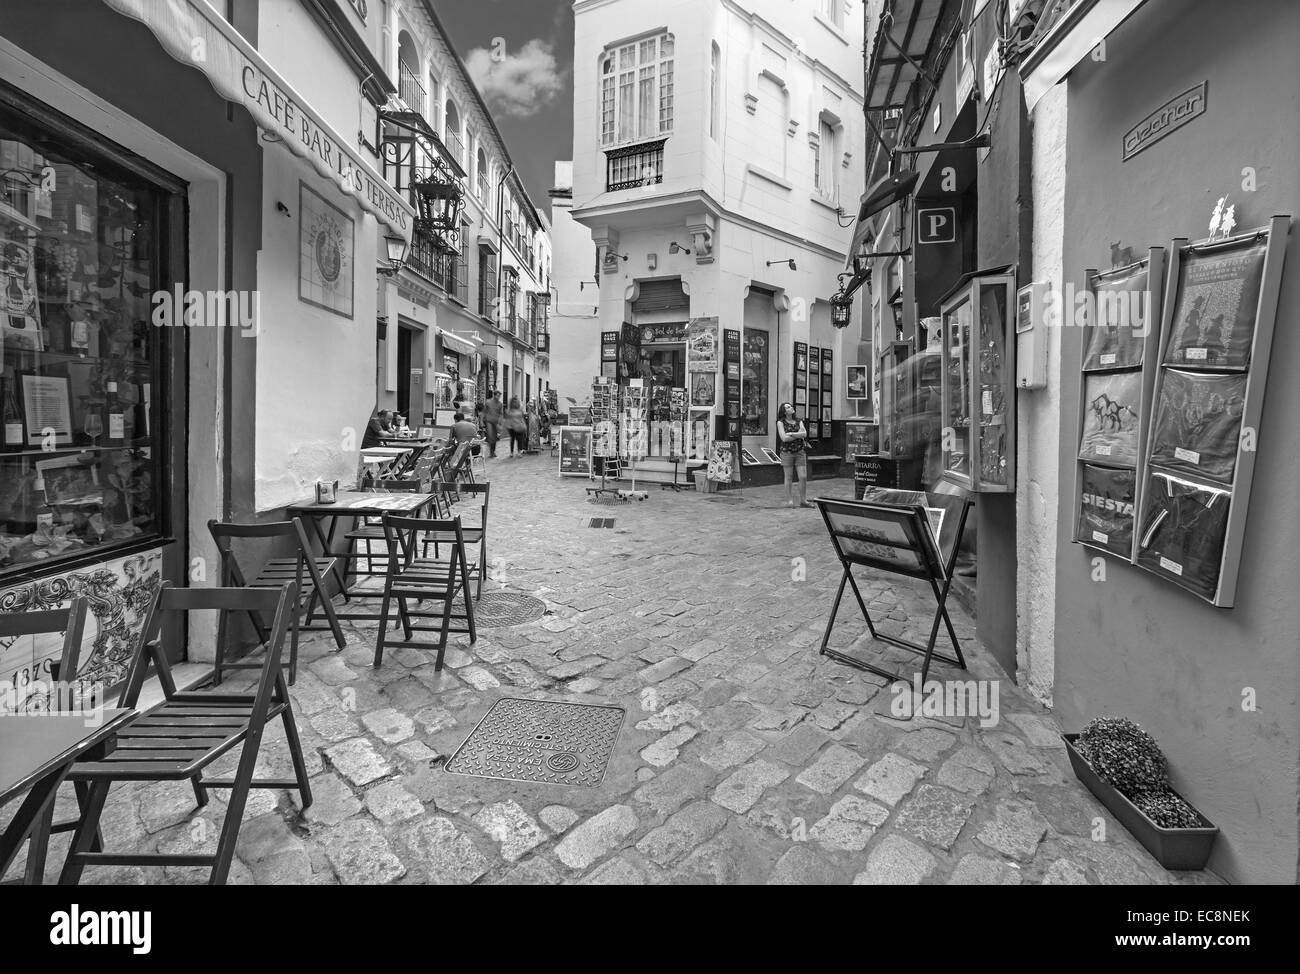 Sevilla - Gassen mit Geschäften und Restaurants im Viertel Santa Cruz - Calle Ximenez de Enciso Straße. Stockfoto